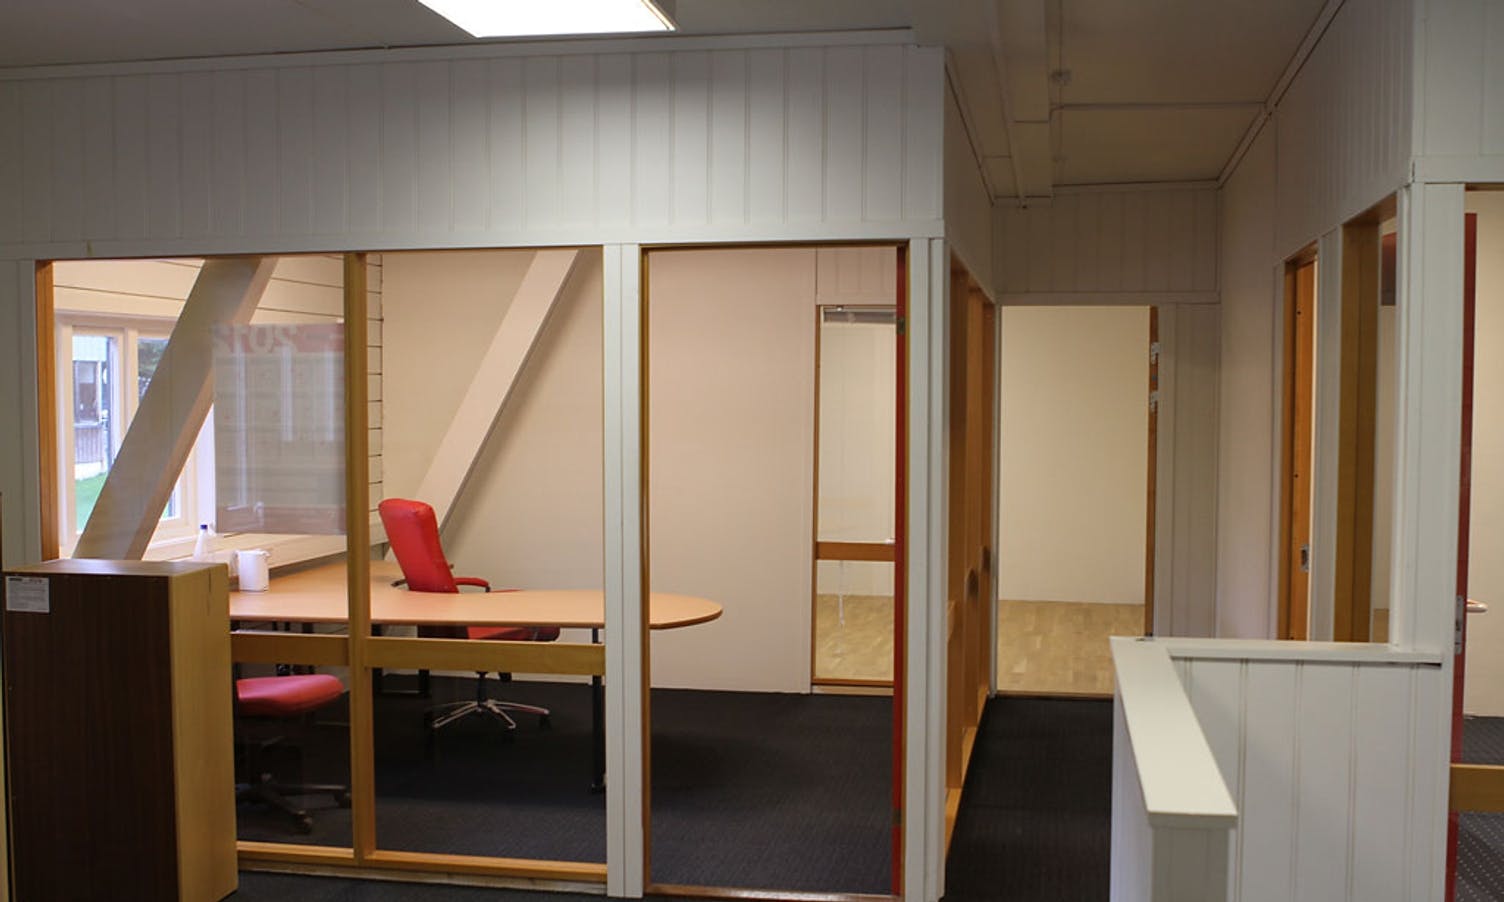 Nytt kontor og lærrom er også på plass. (Foto: KVB)